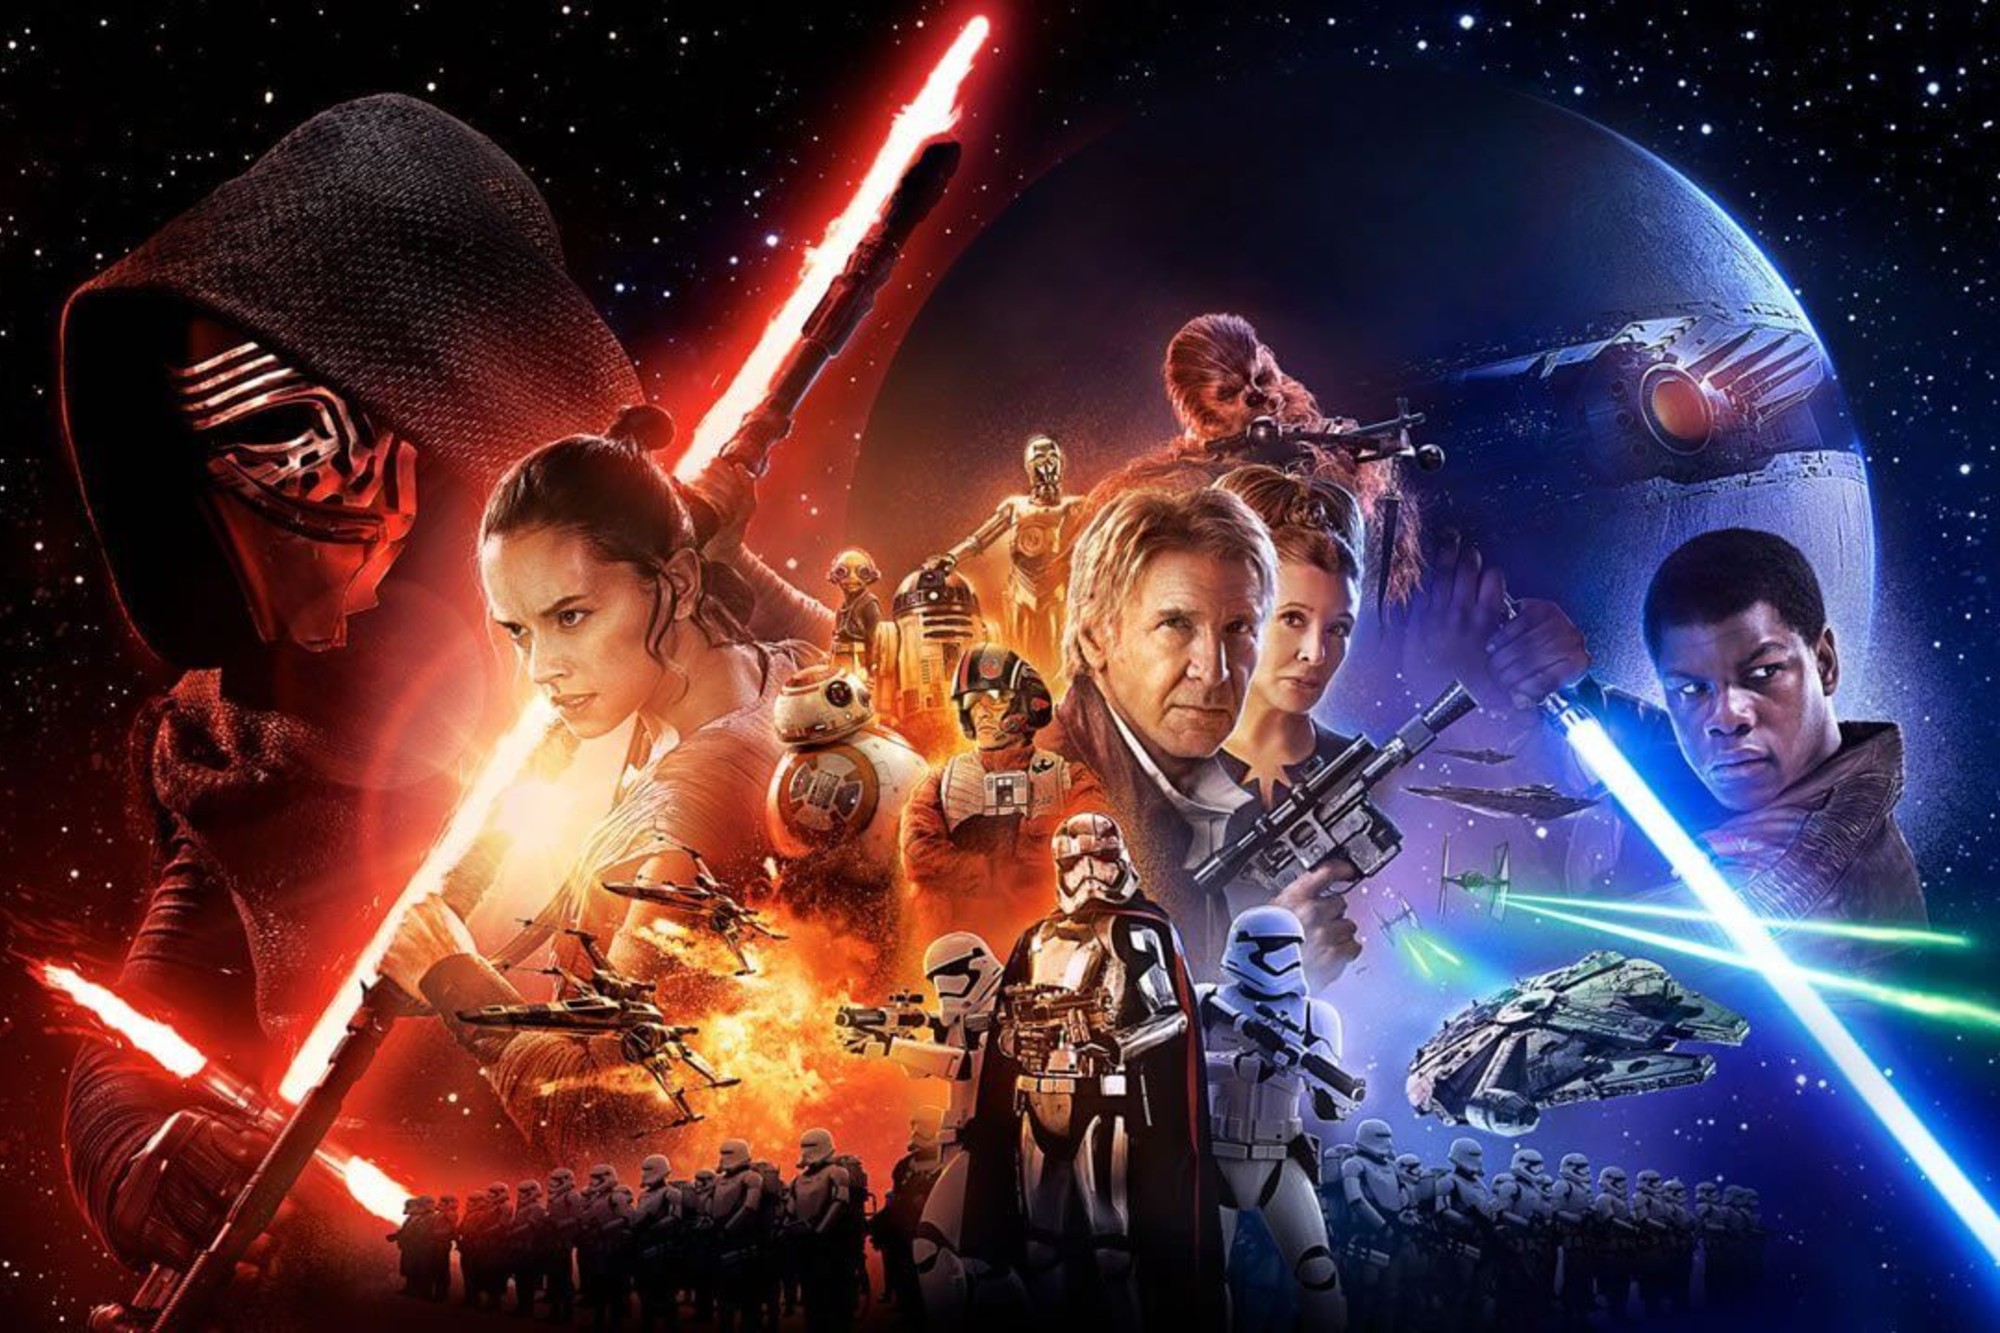 Star Wars': Mark Hamill não assiste aos filmes da franquia há mais